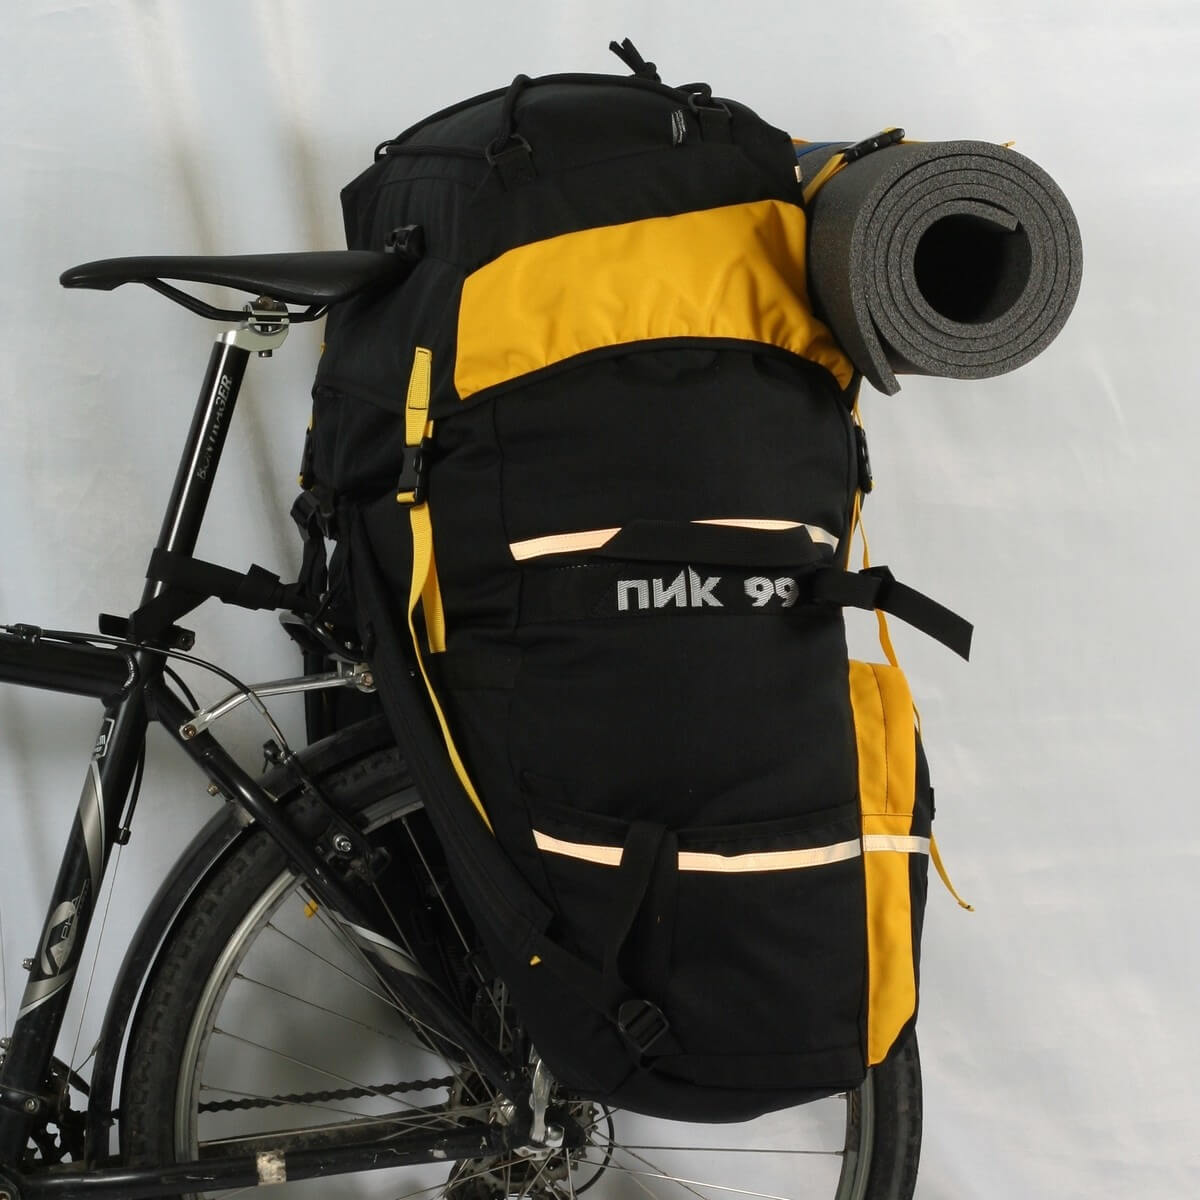 ПИК-99 Трек-90М-2 Велорюкзак-штаны на багажник • Велосервис NSK